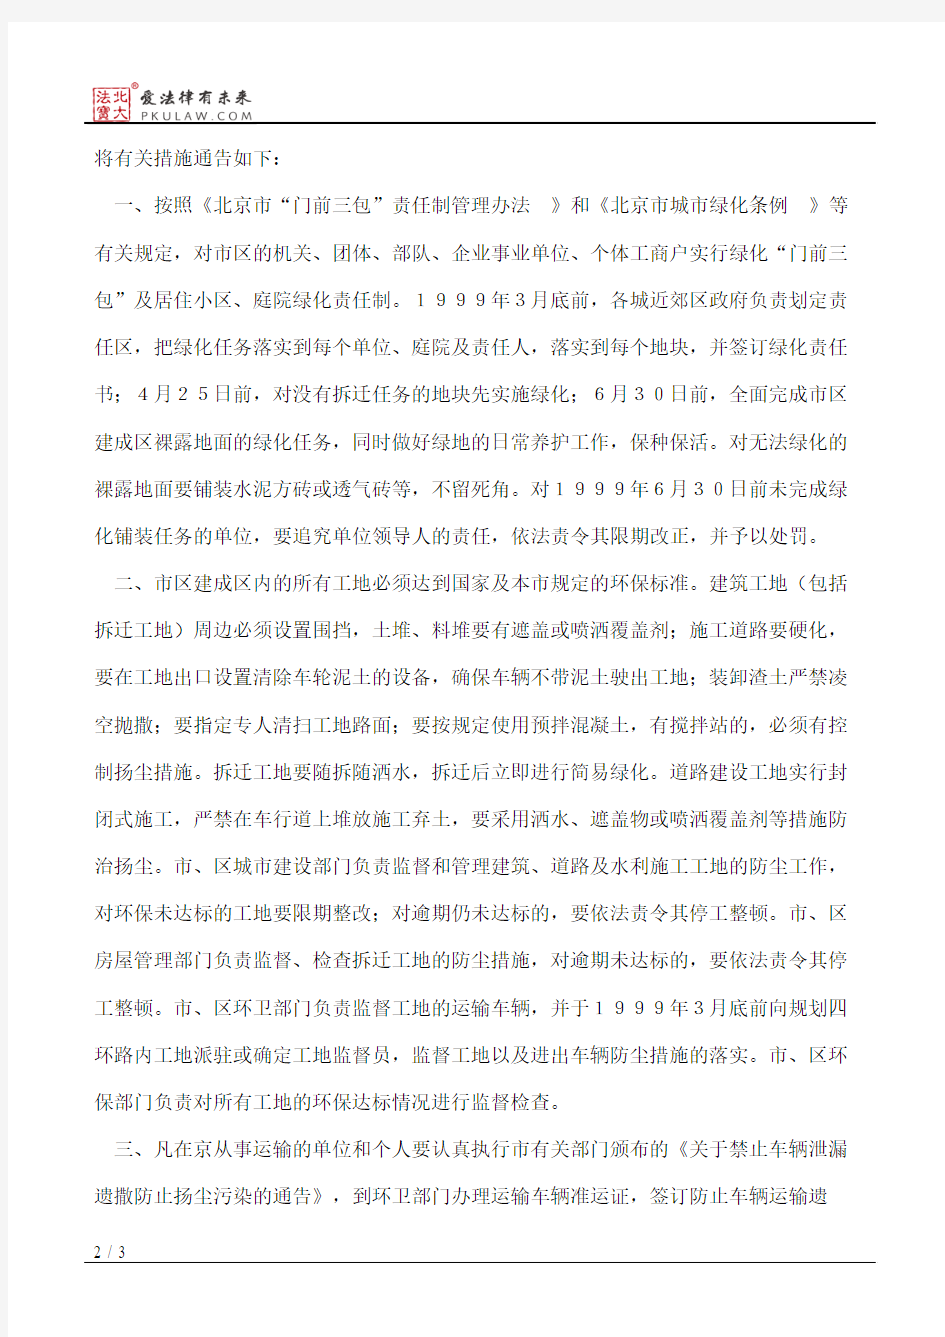 北京市人民政府关于发布本市第二阶段控制大气污染措施的通告